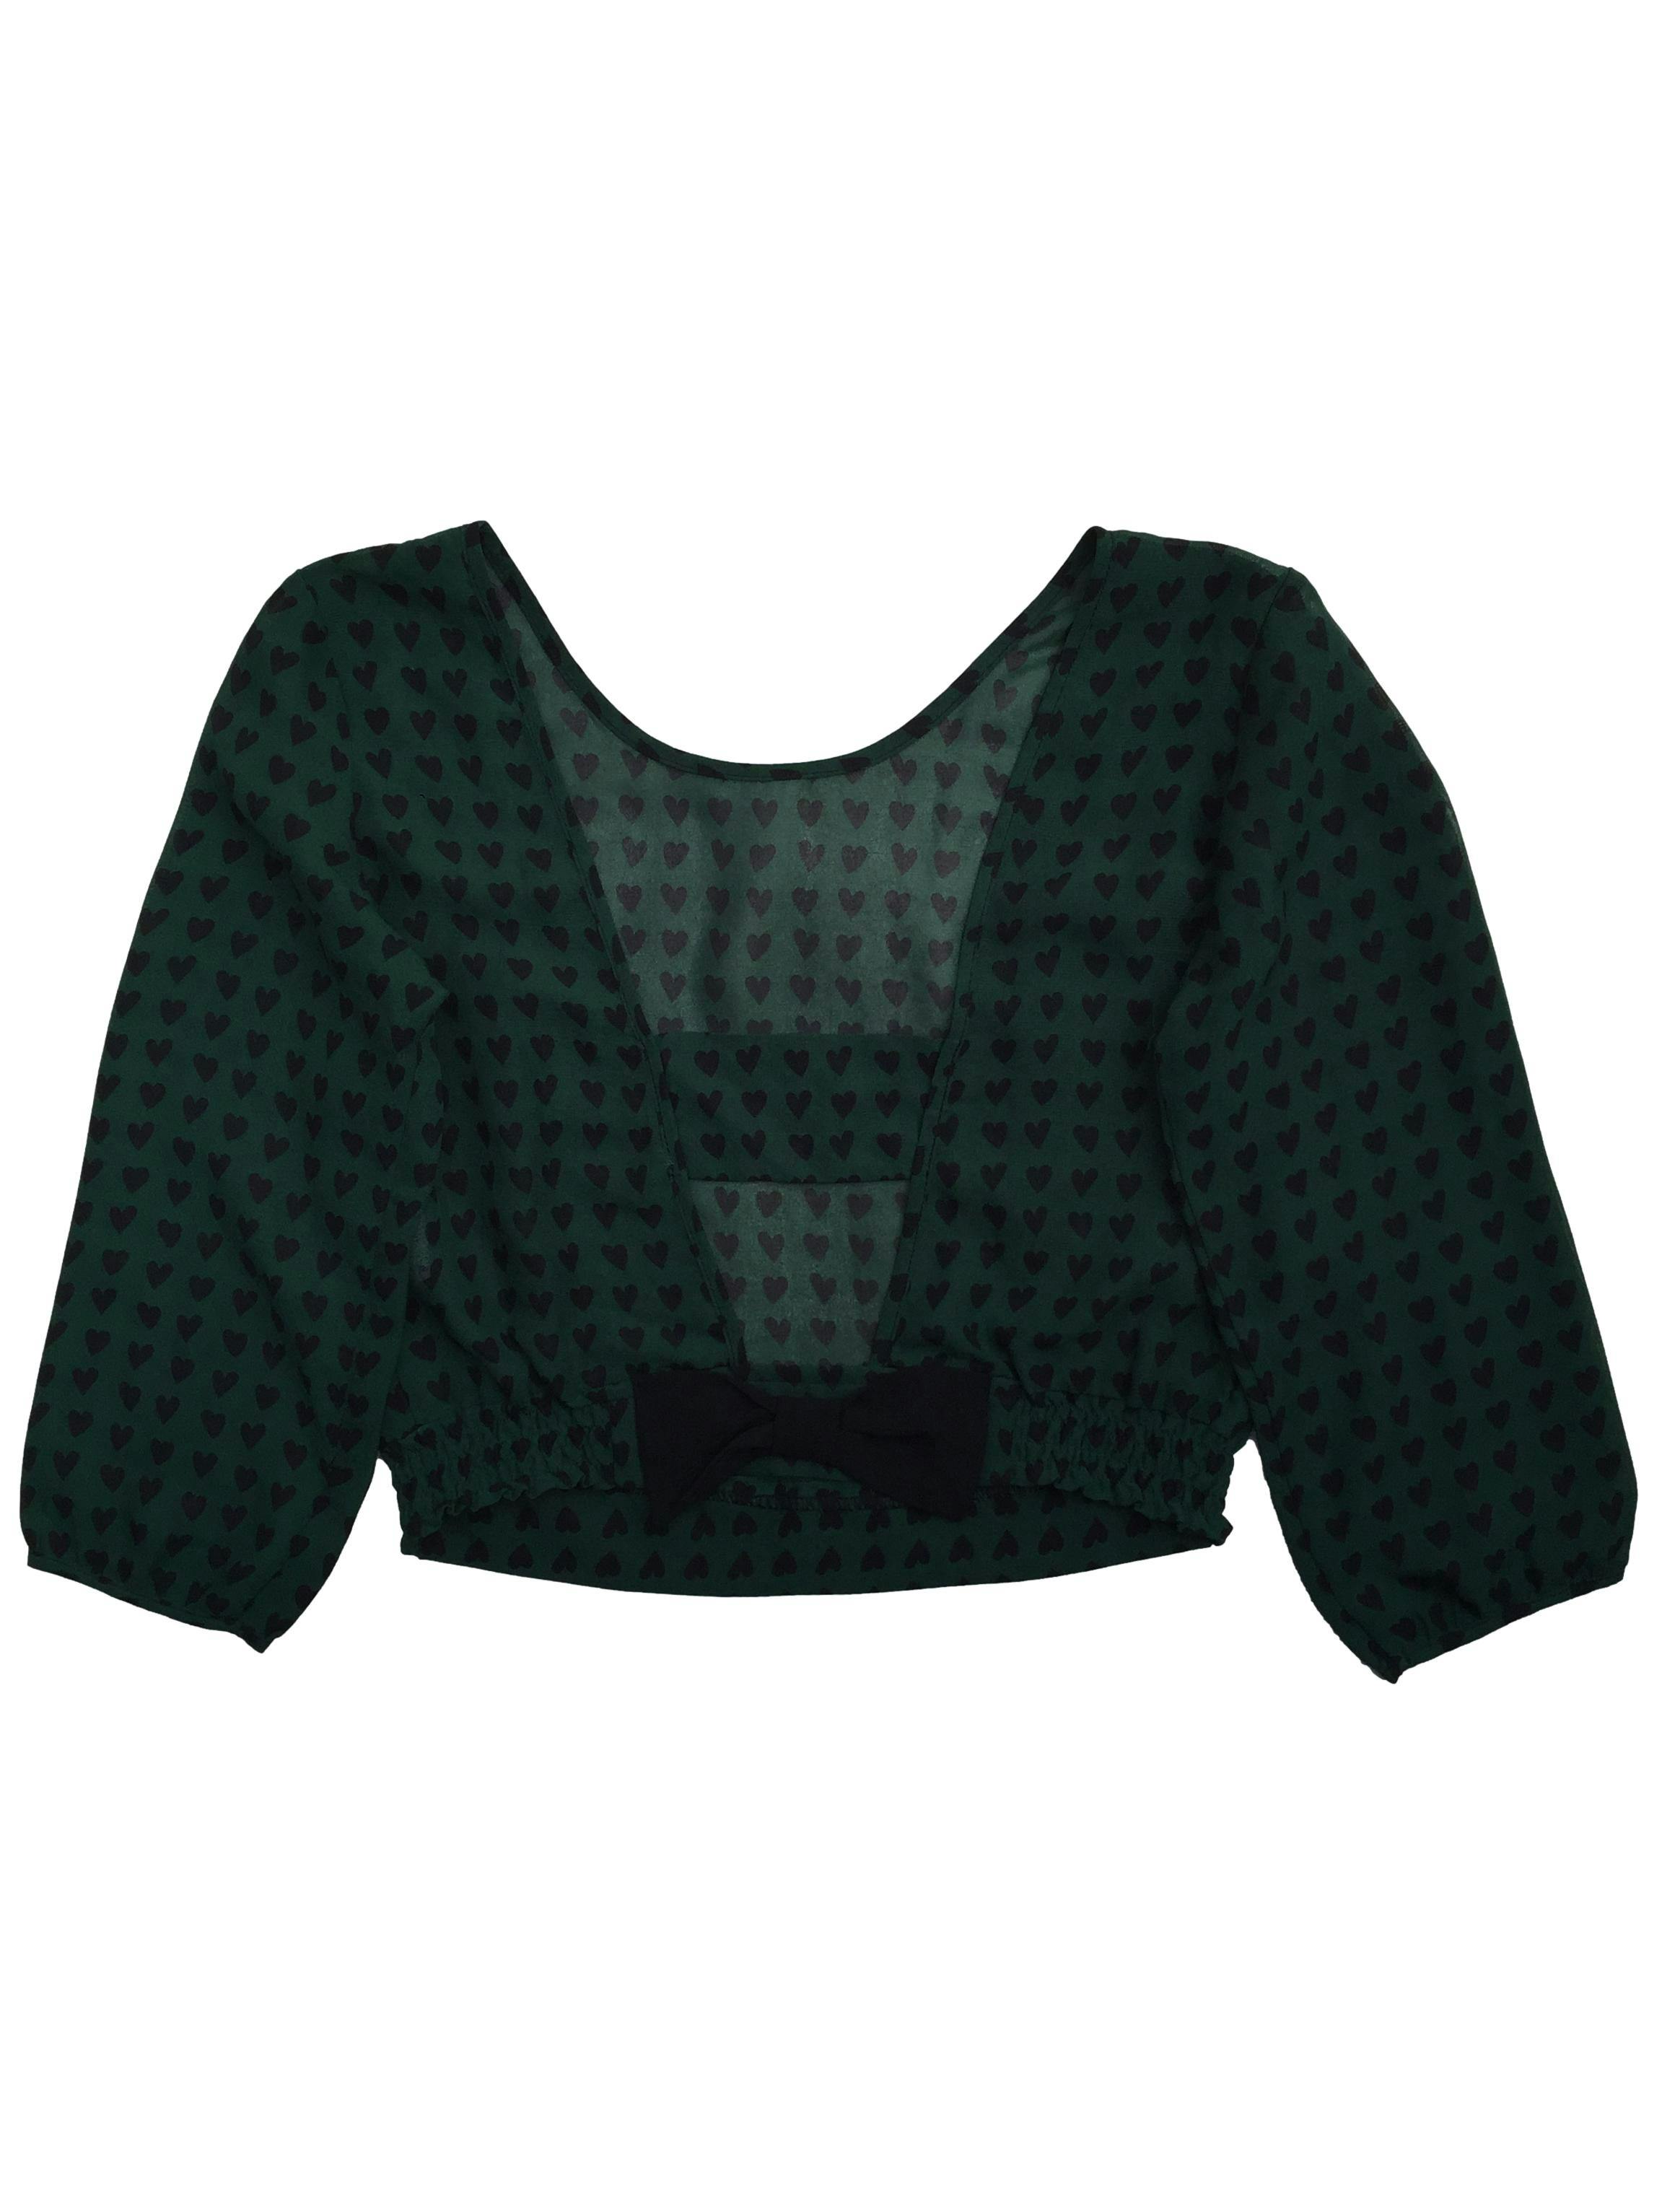 Blusa Xiomi de gasa verde con estampado de corazones negros, abertura en la espalda y detalle de lazo. Busto: 90cm, Largo: 40cm